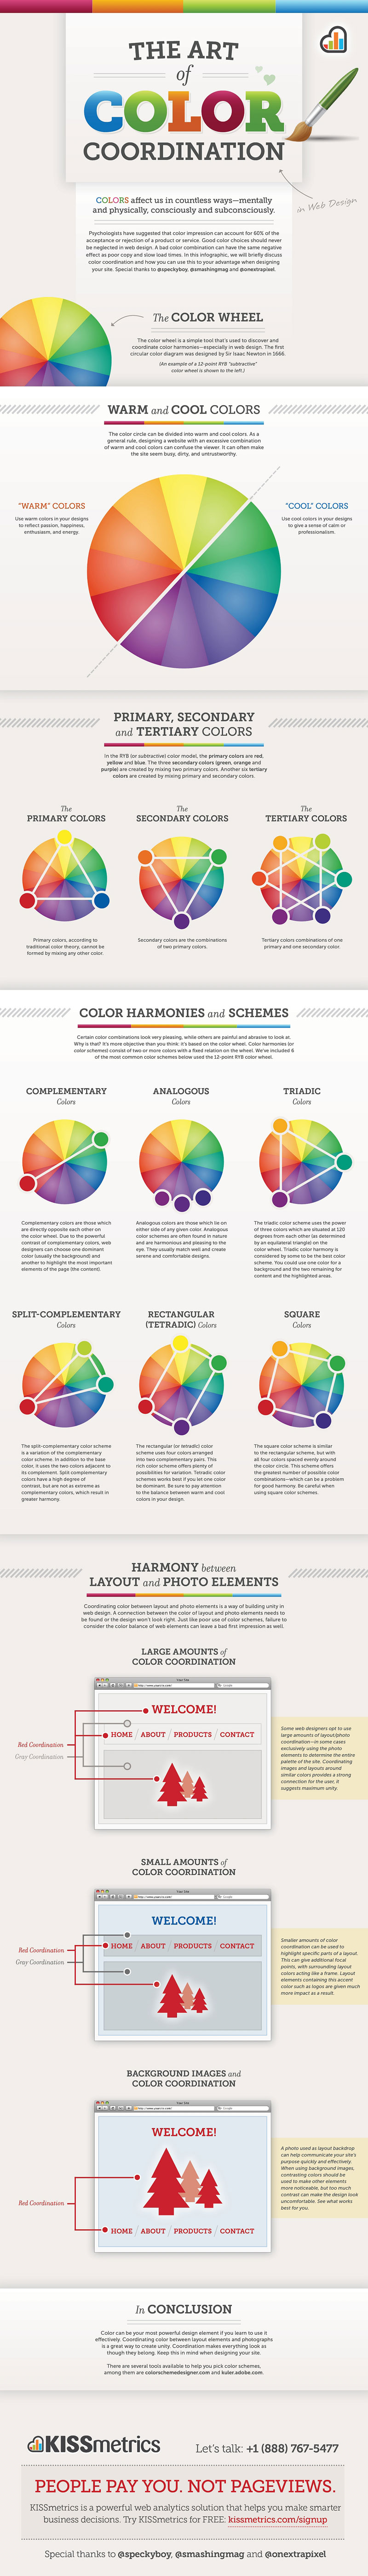 Color coordination in web design.